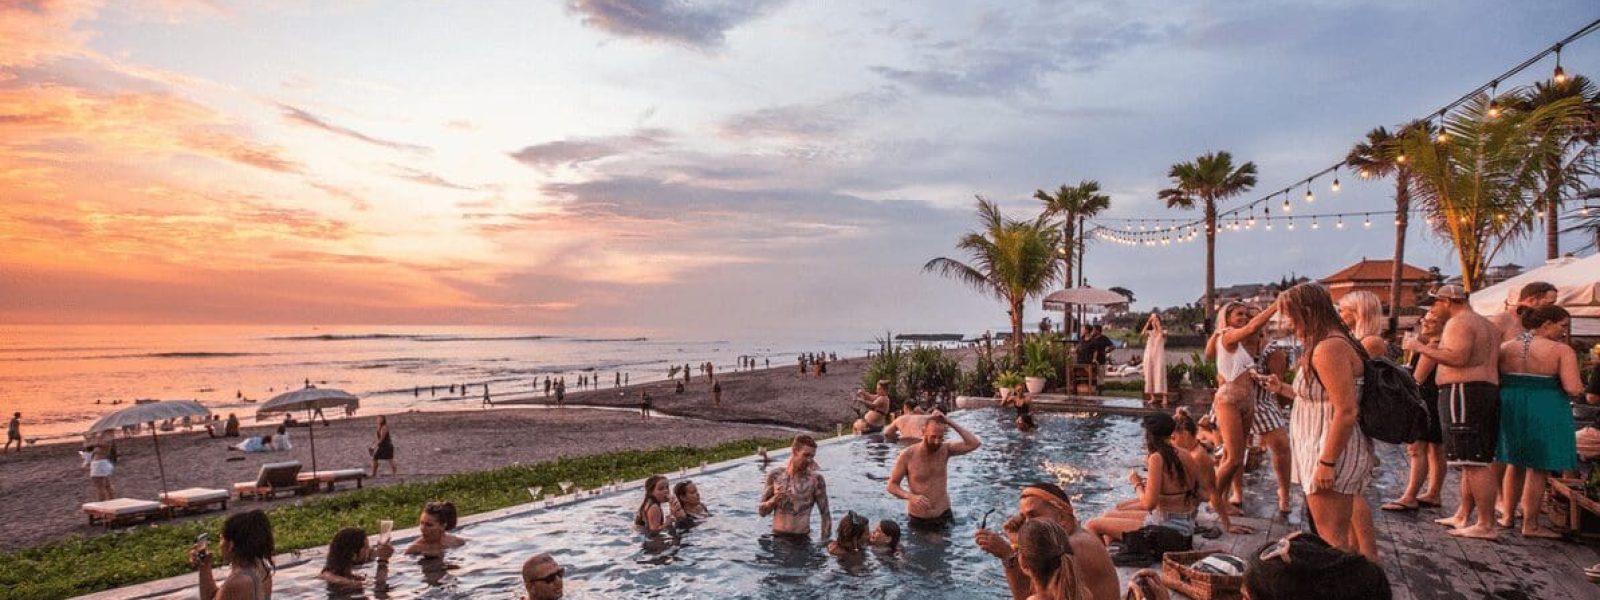 Vakantie vieren in deze beachclub in Canggu op Bali